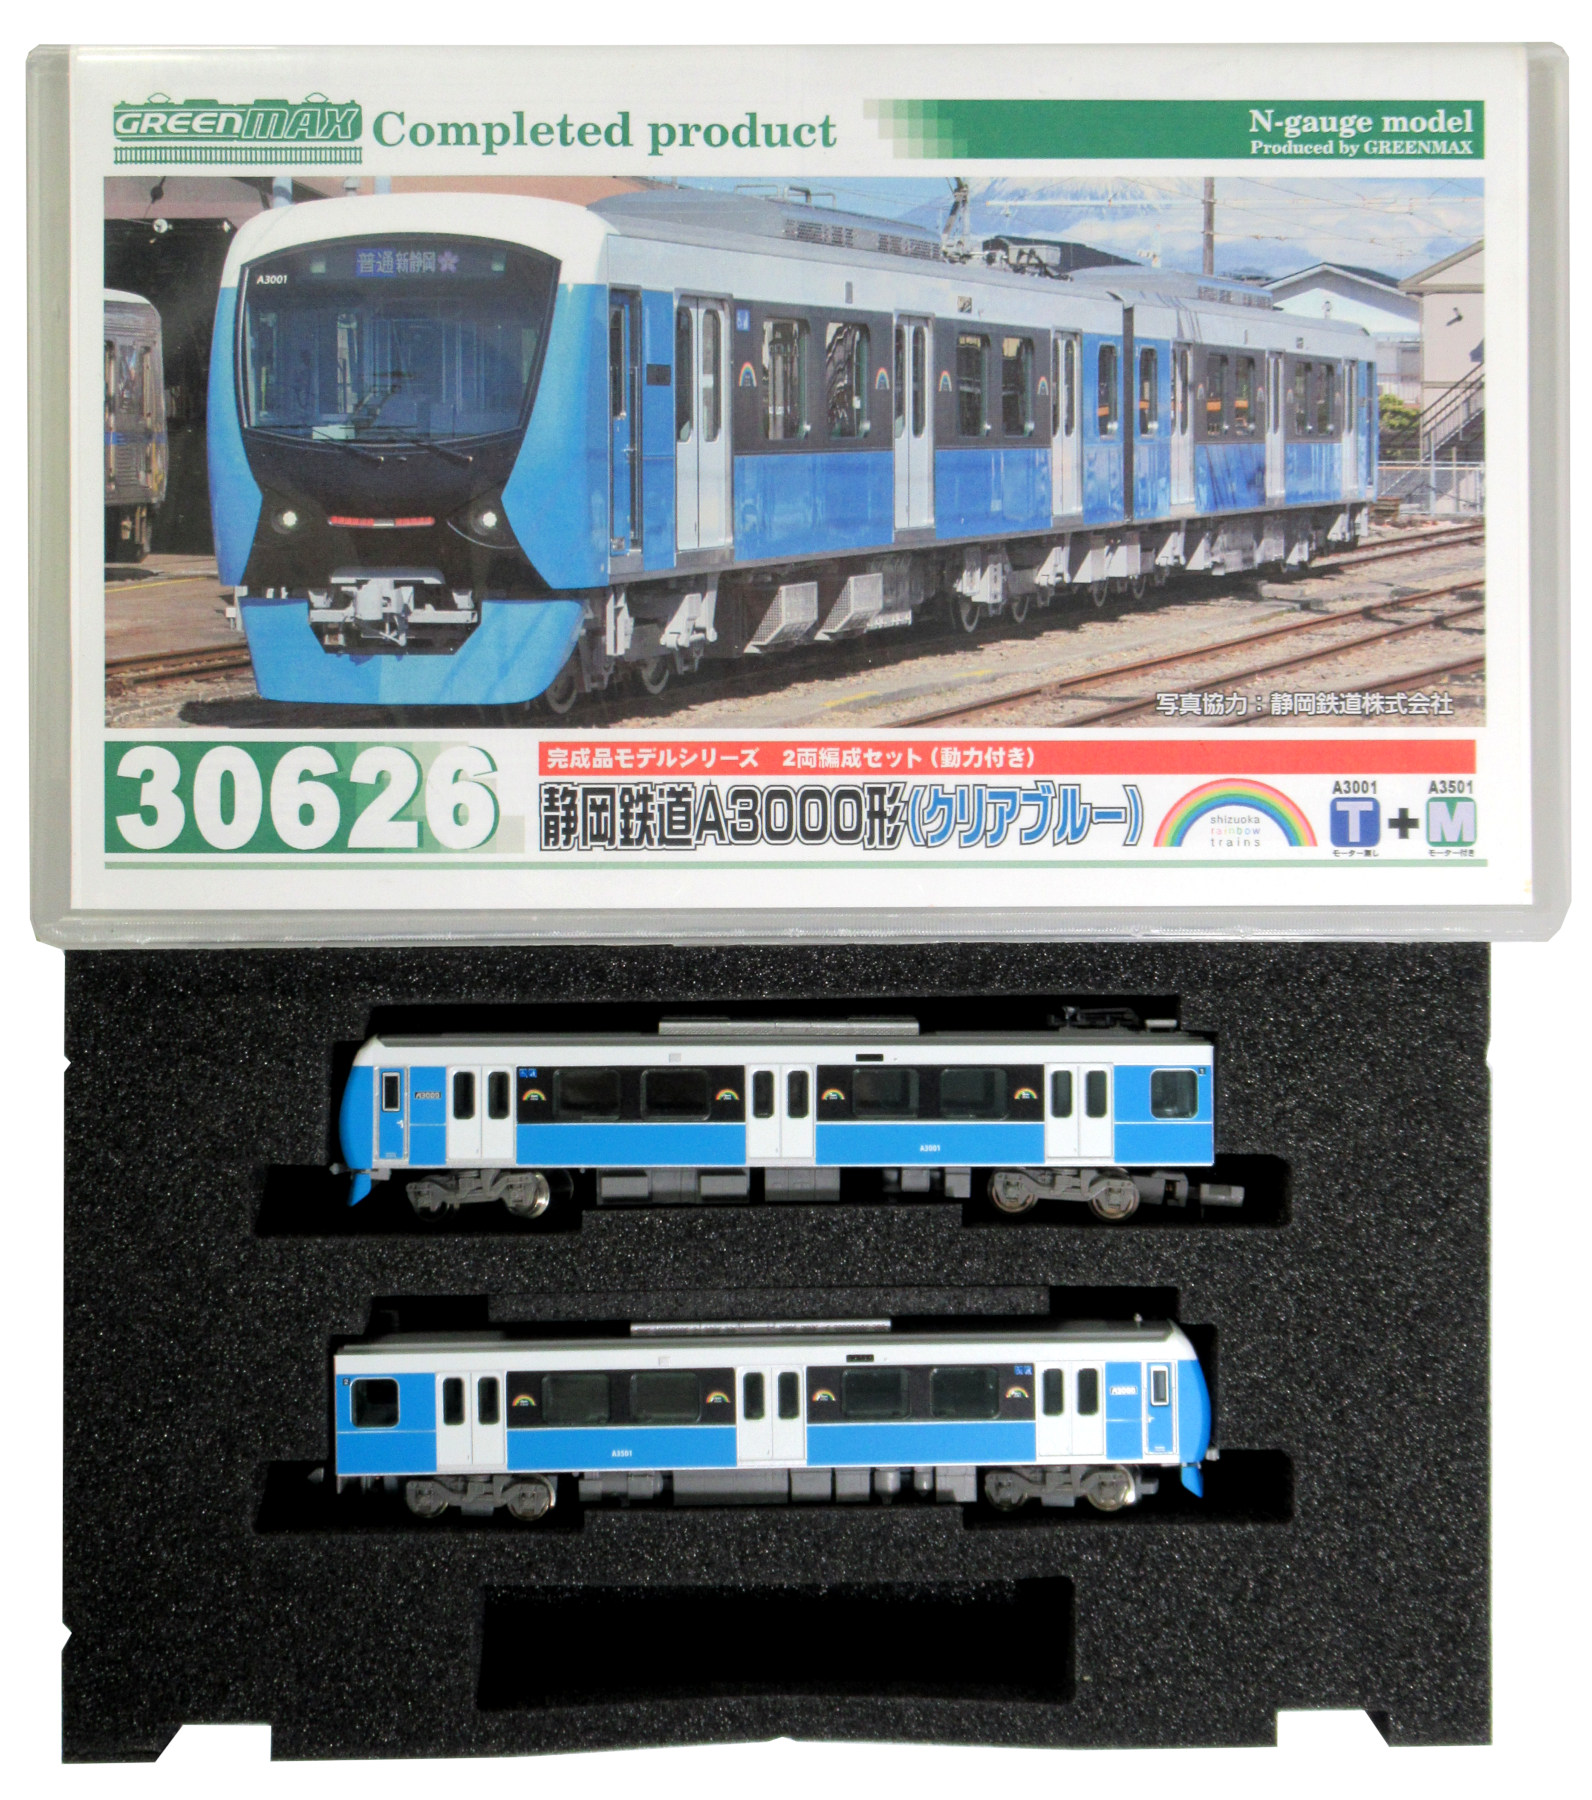 公式]鉄道模型(30626静岡鉄道 A3000形 (クリアブルー) 2輛編成セット 